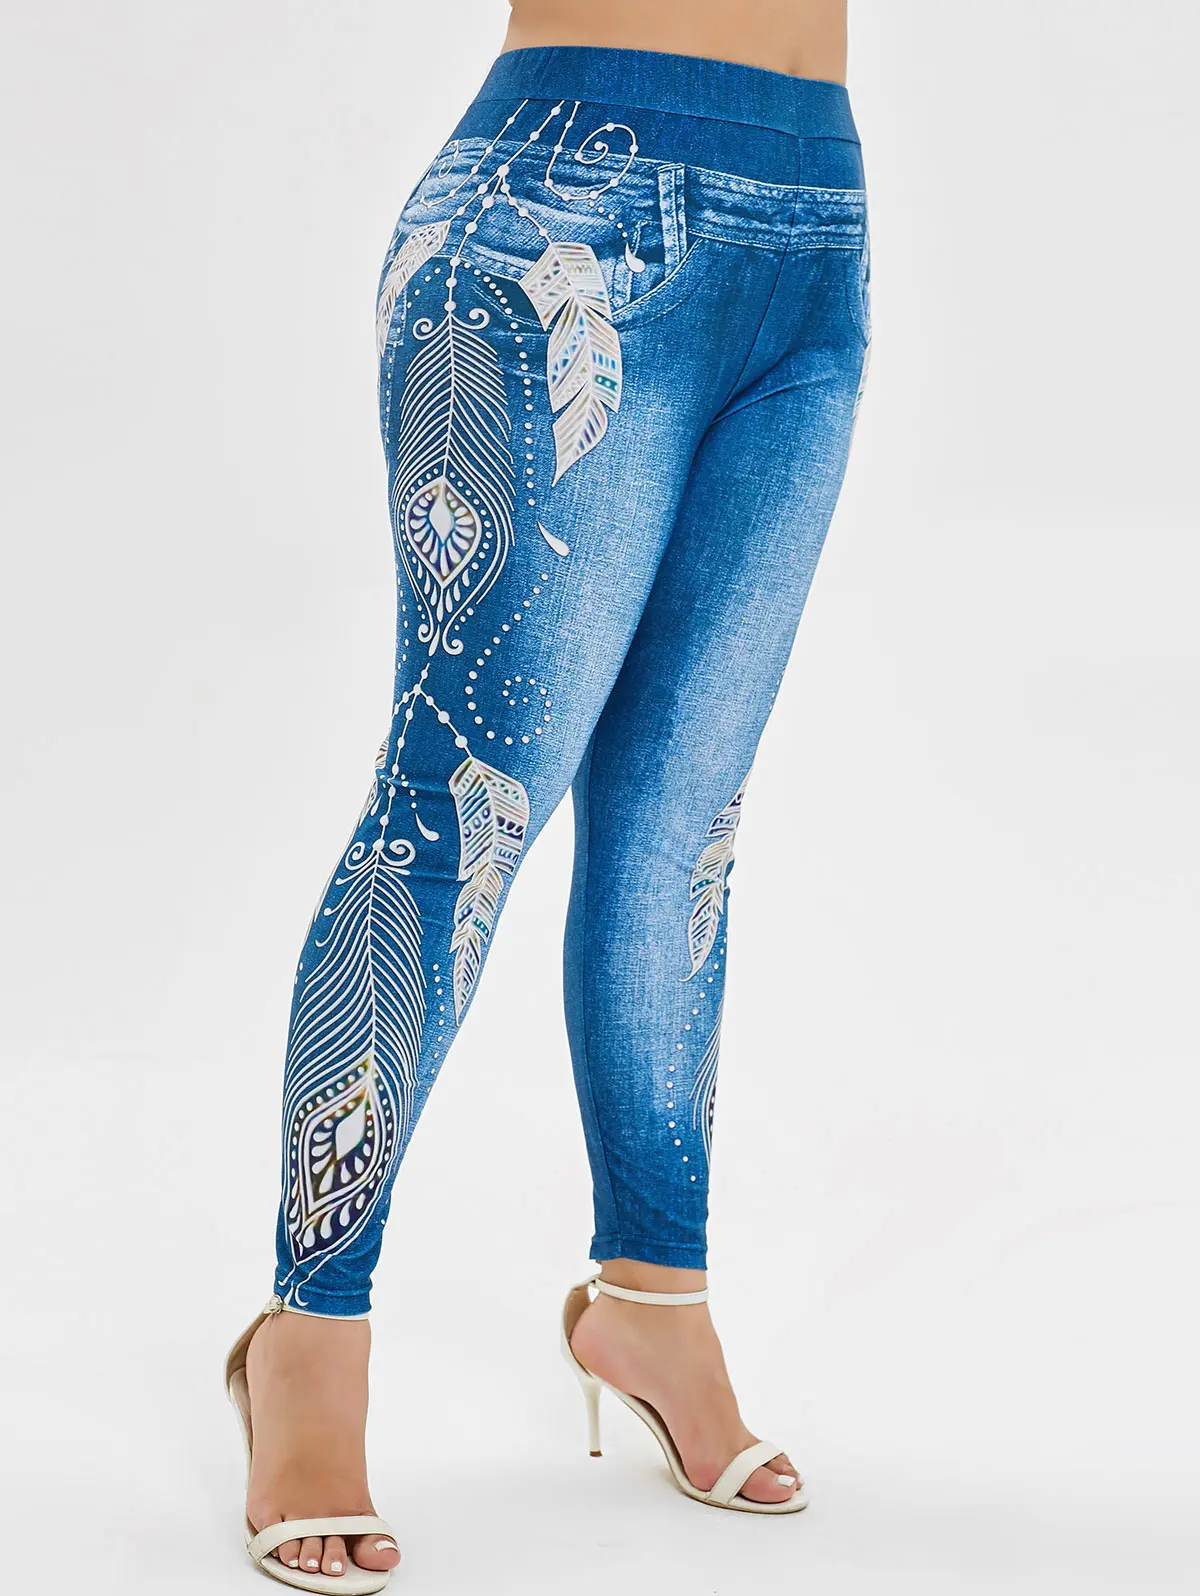 ROSEGAL плюс размер 5XL 3D Длинные голубой джинс деним леггинсы с принтами женские большие размеры Фитнес Джеггинсы на шнуровке обтягивающие леггинсы - Цвет: Multi